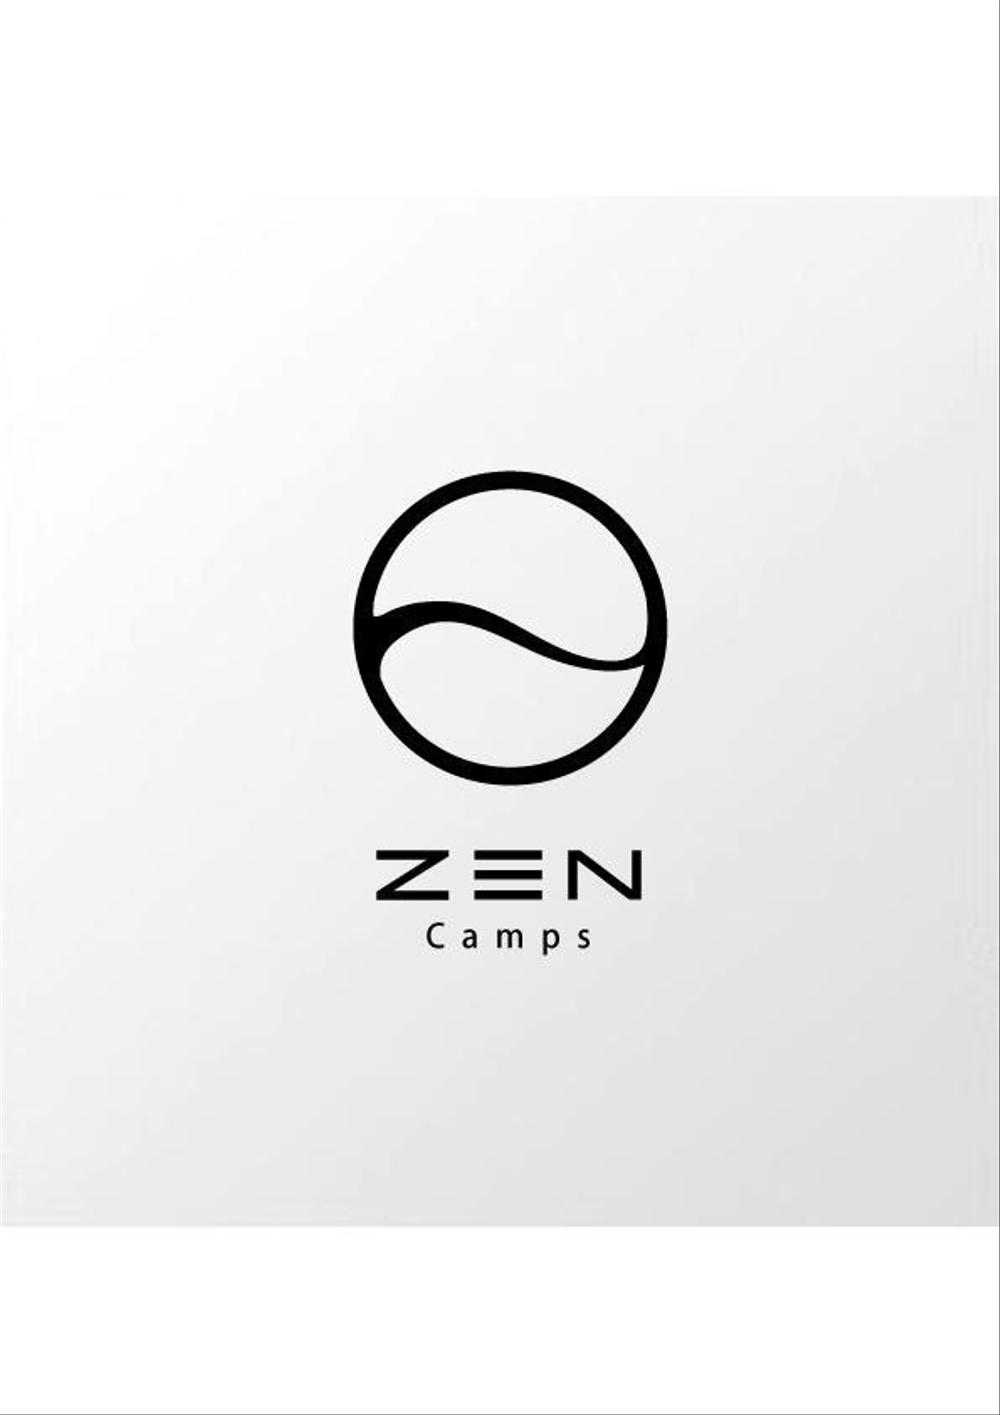 キャンプ用品ブランドのロゴ作成